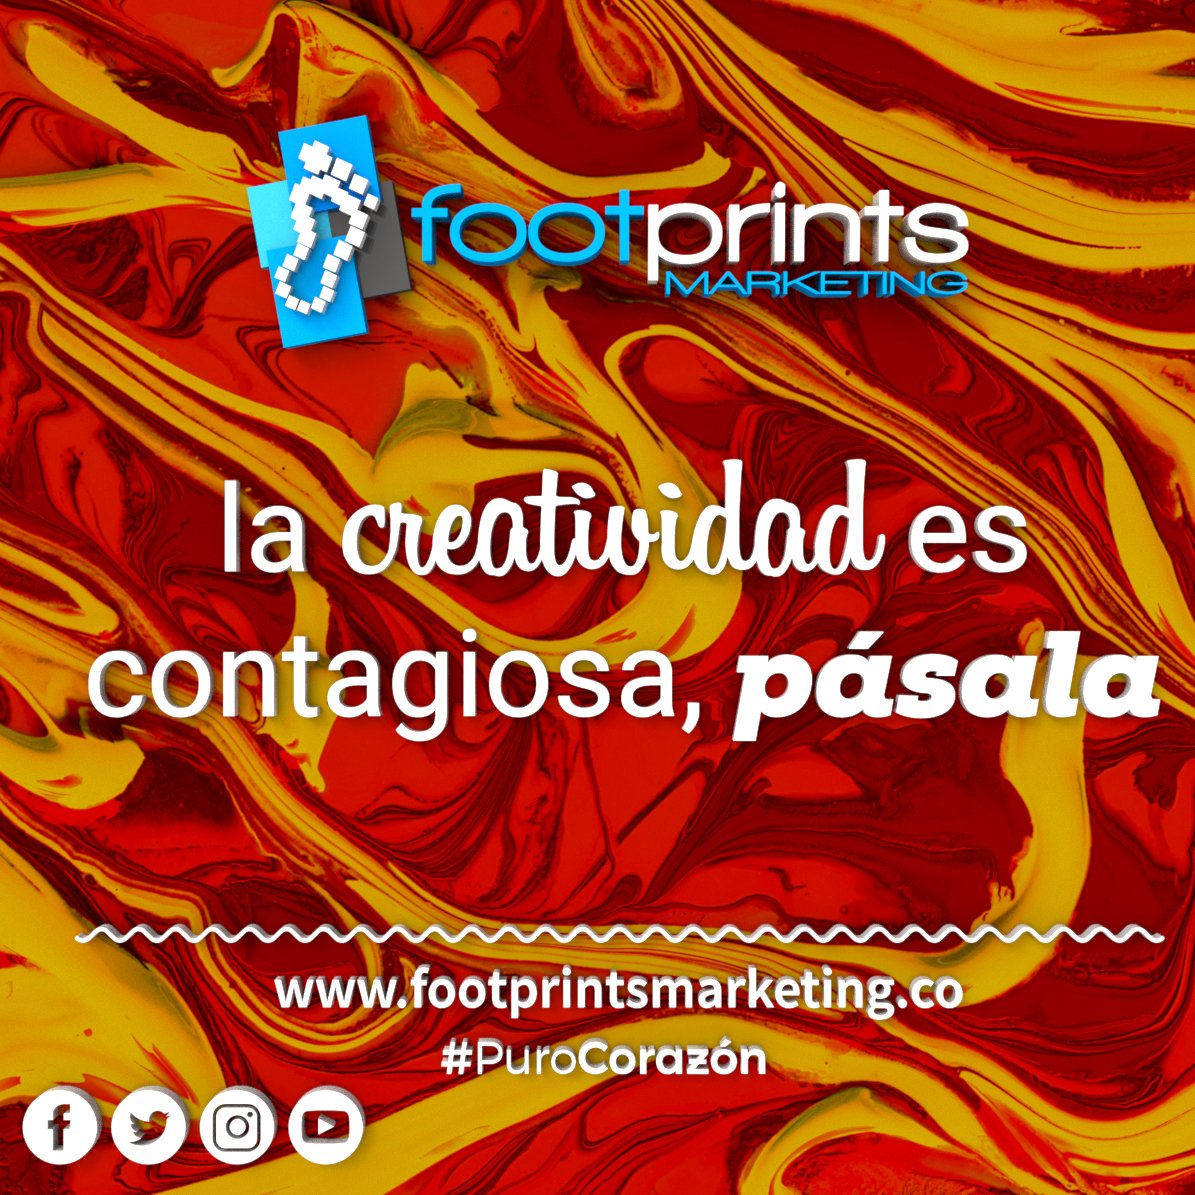 Contagia tu creatividad #FootprintsMarketing #PuroCorazón #Creatividad #ContagiaTuCreatividad